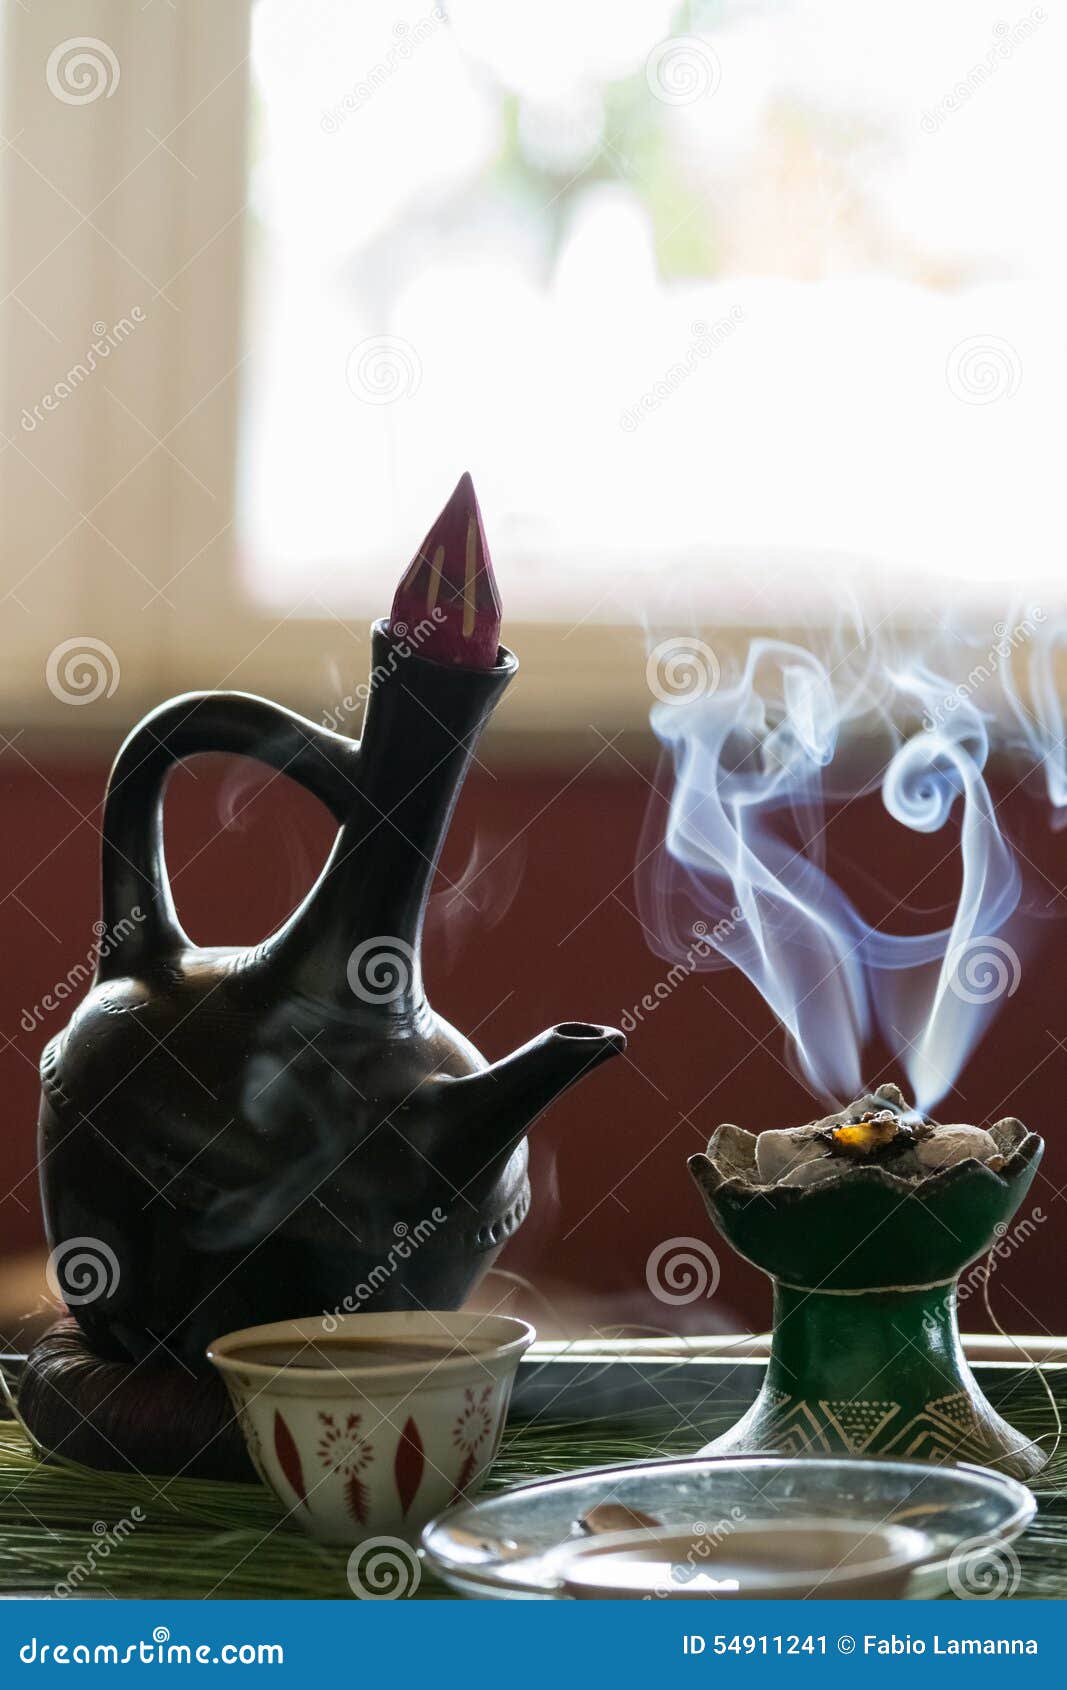 Ethiopian Traditional Coffee Ceremony Stock Image - Image of break